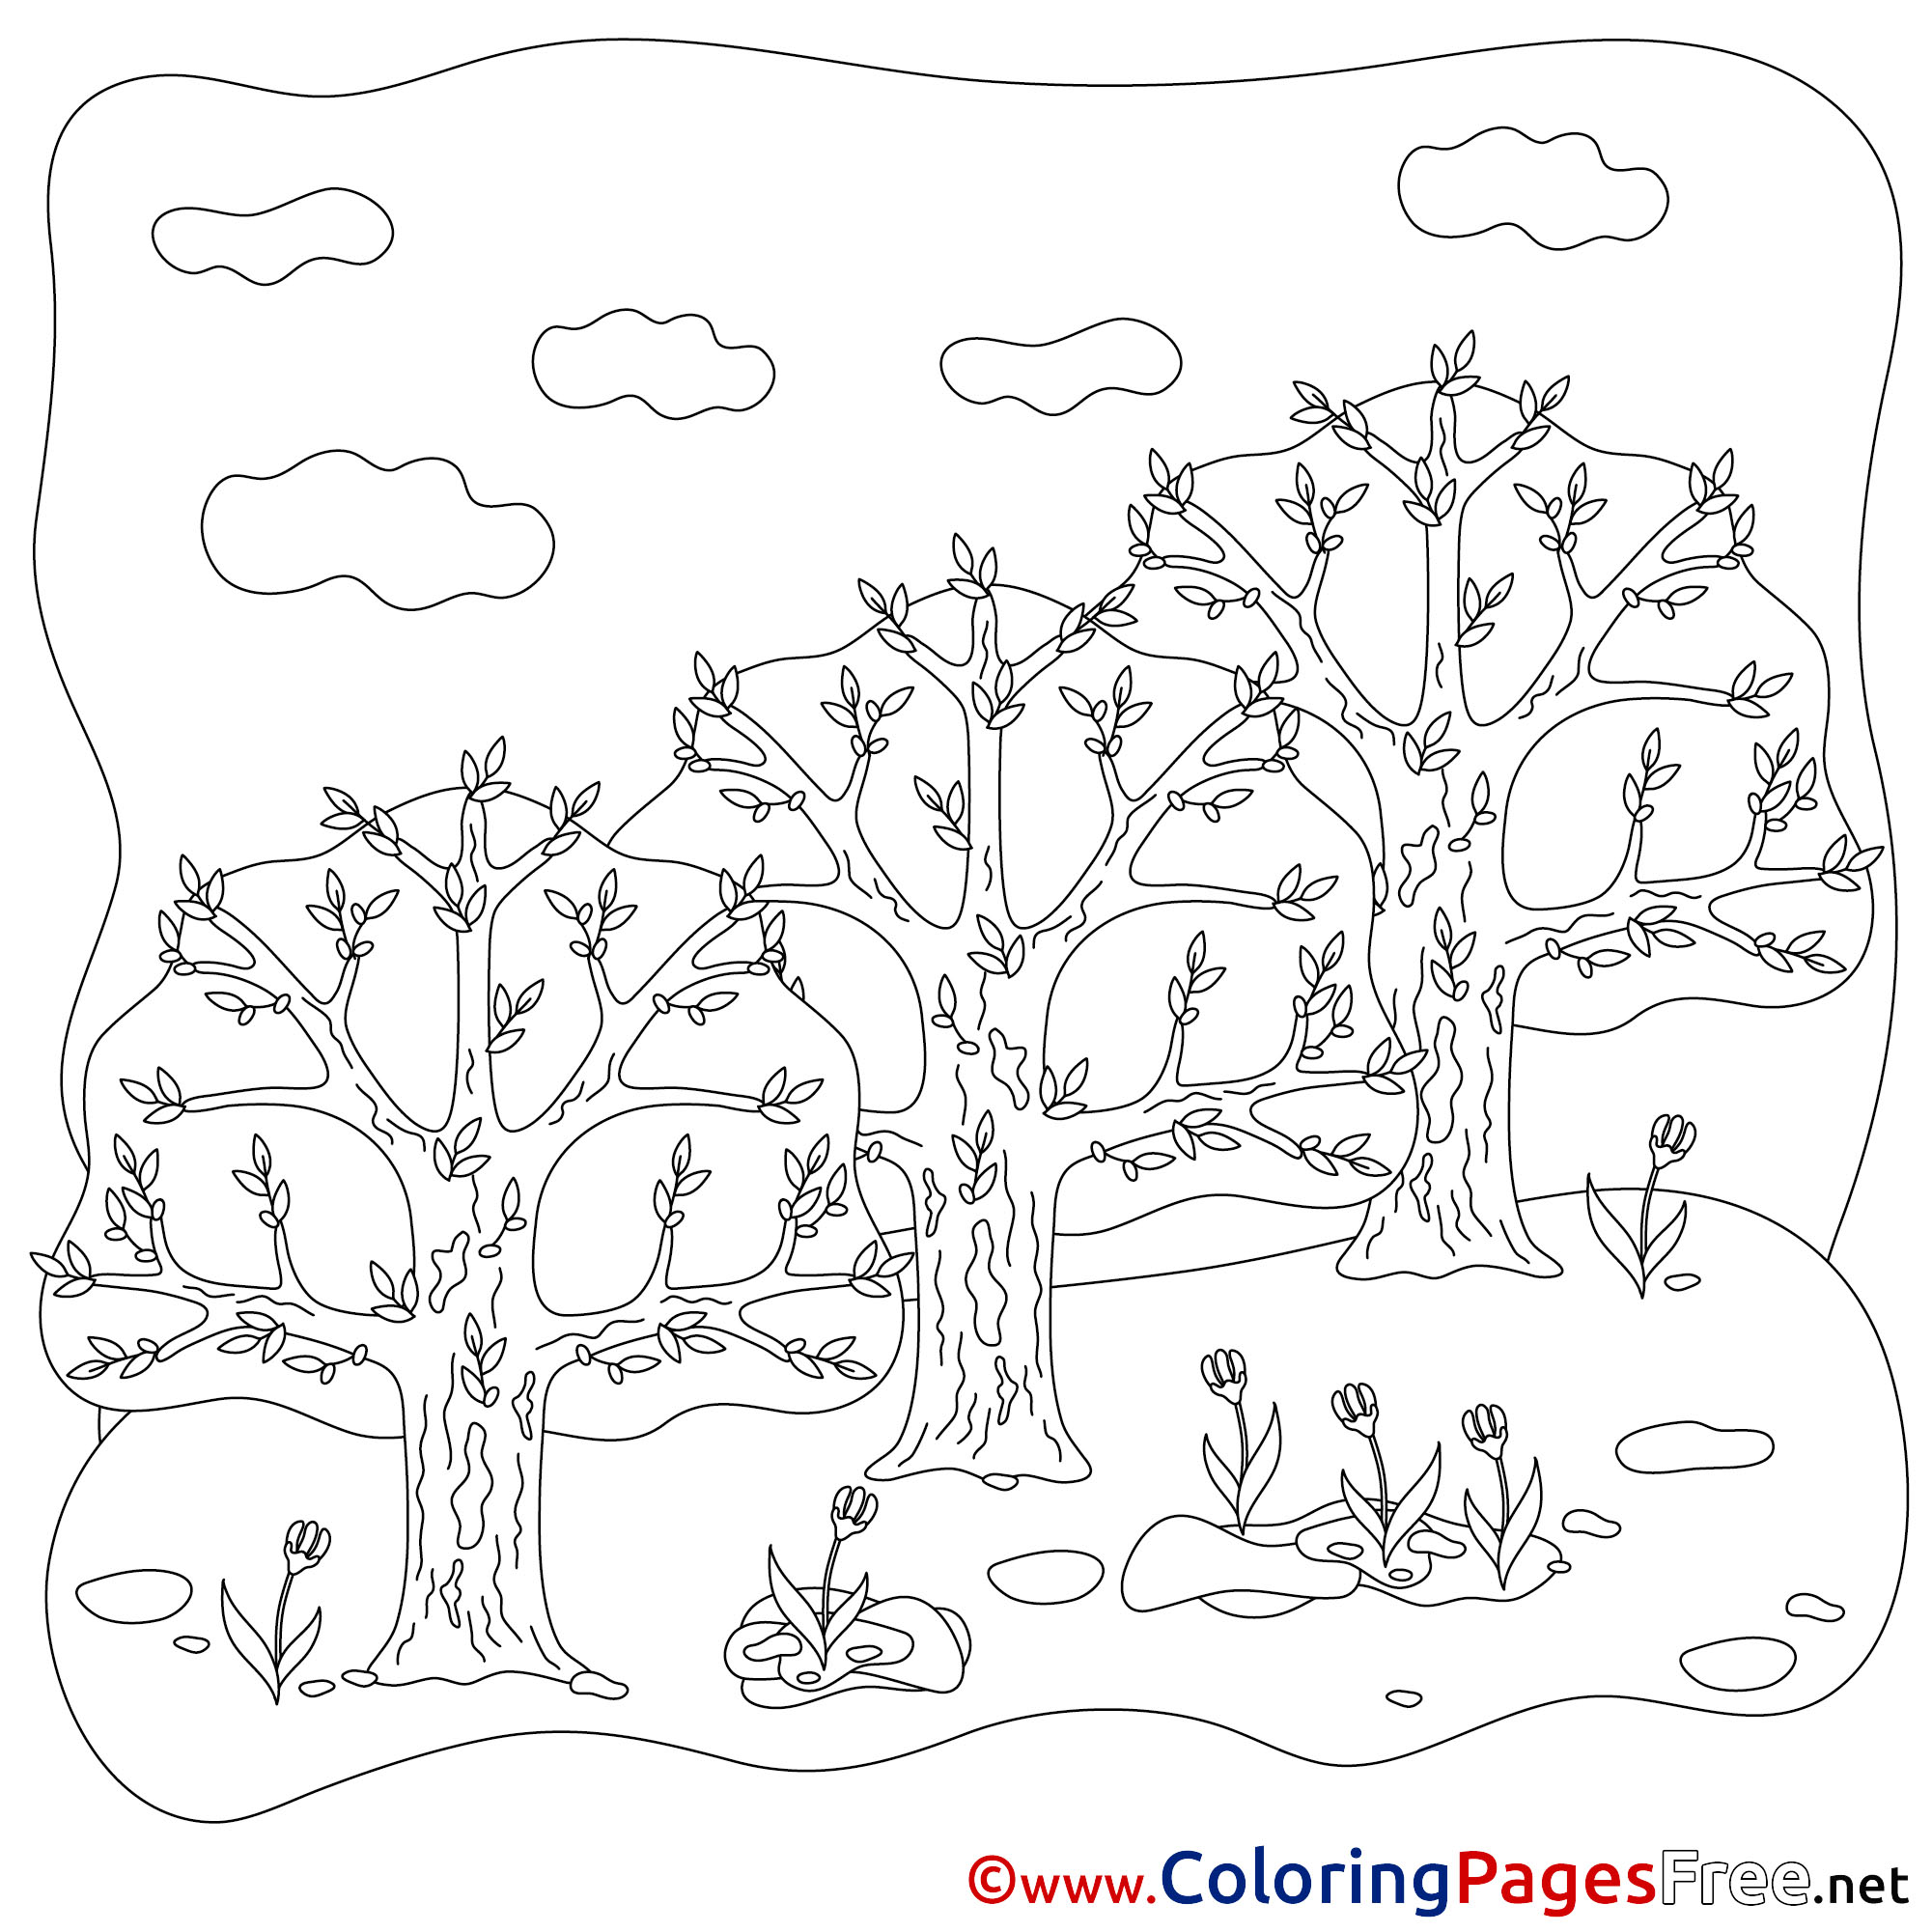 Раскраска день леса. Весенний лес раскраска для детей. Раскраска день леса для детей. Весенний пейзаж раскраска для детей. Раскраска деревья в лесу.